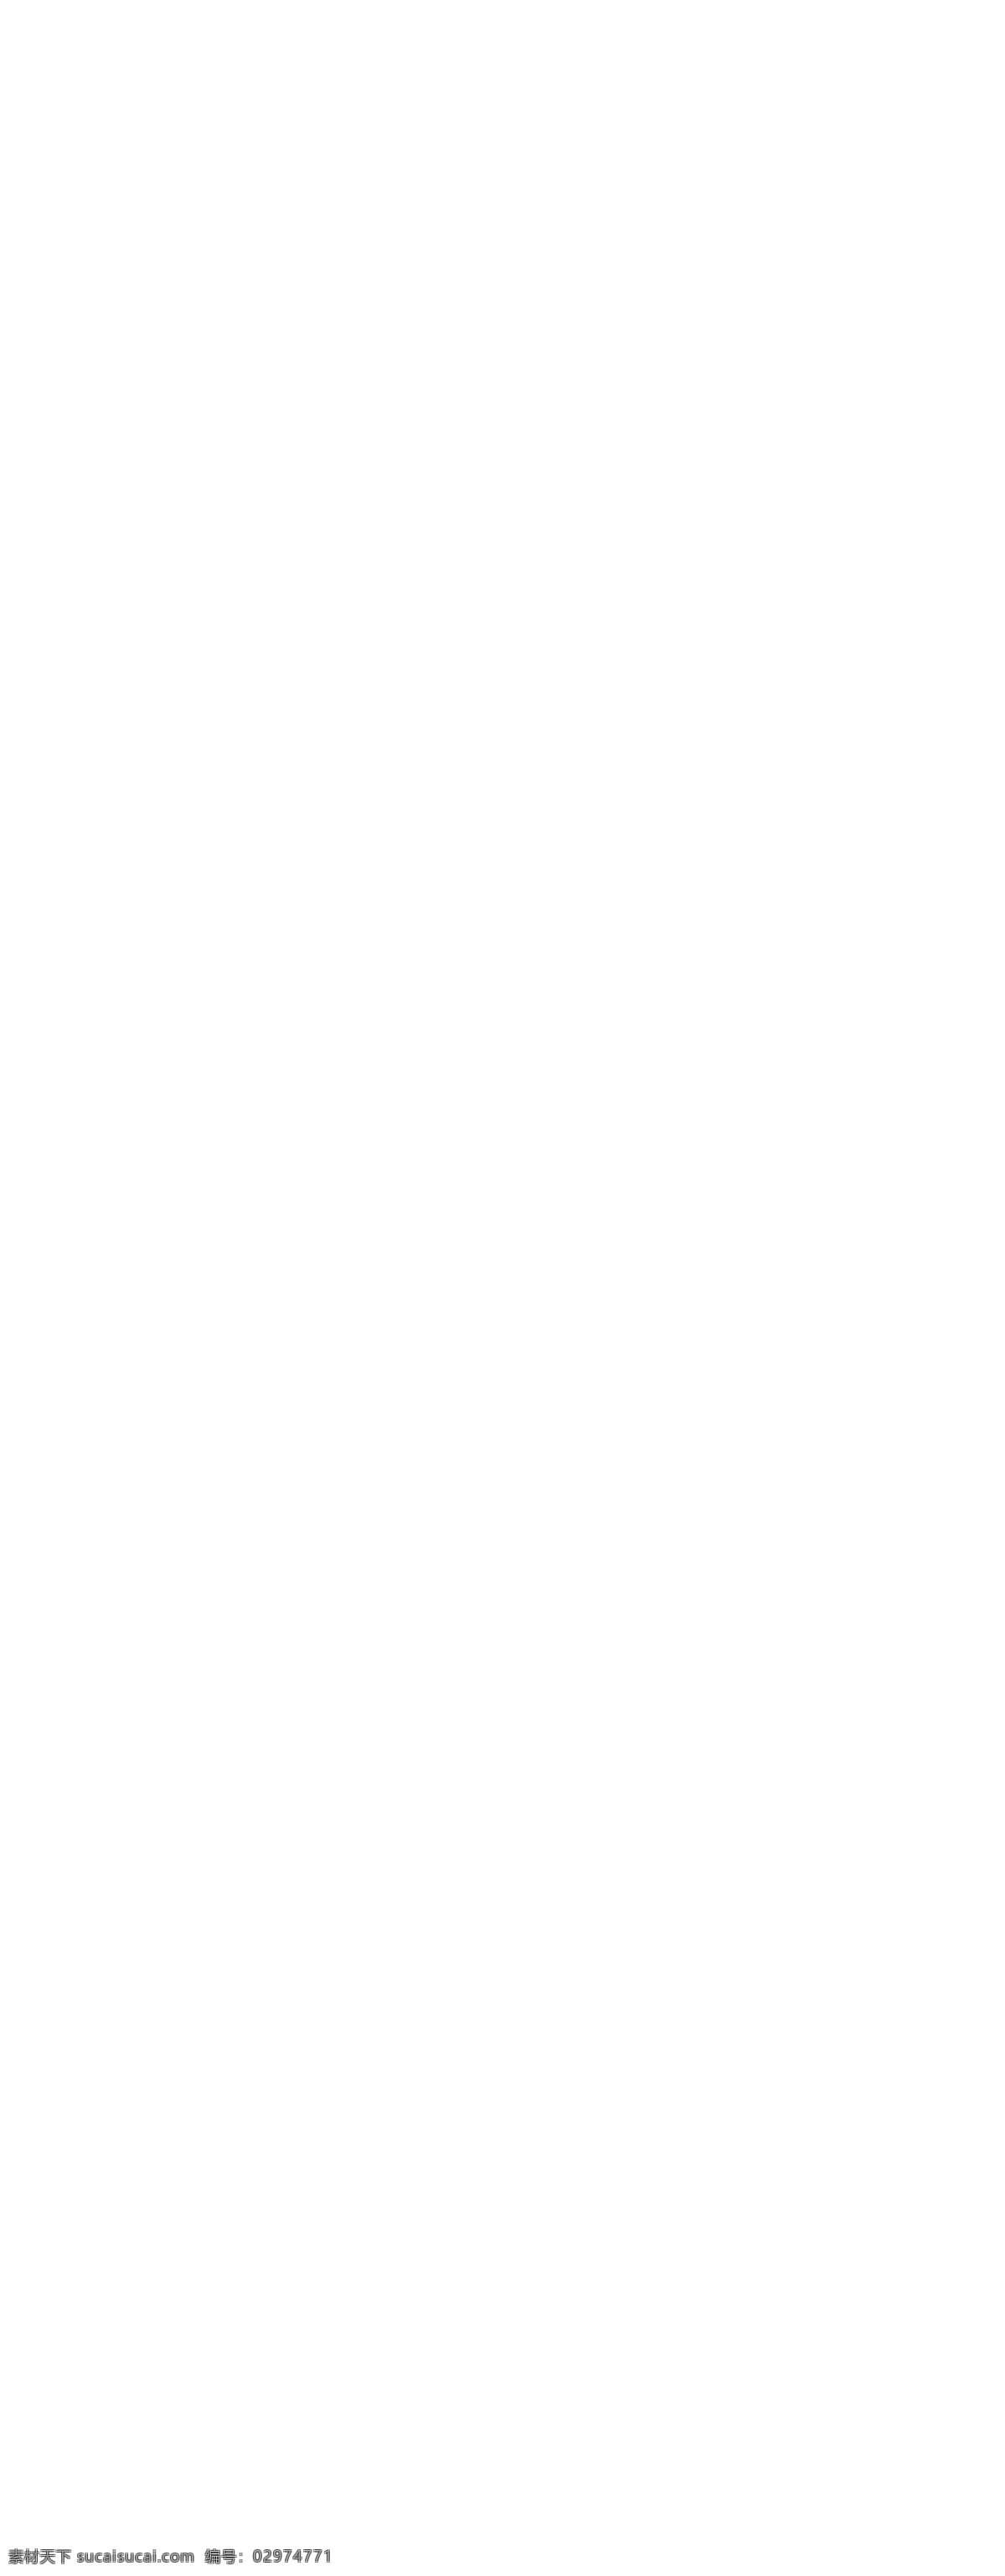 韩 版 家居用品 网店 源文件 ui设计 版式设计 界面设计 网页版式 网站菜单 商业 模板 网站 分层 日常 家居 网站设计 页面 网站焦点图 可爱 免费 网页素材 网页模板